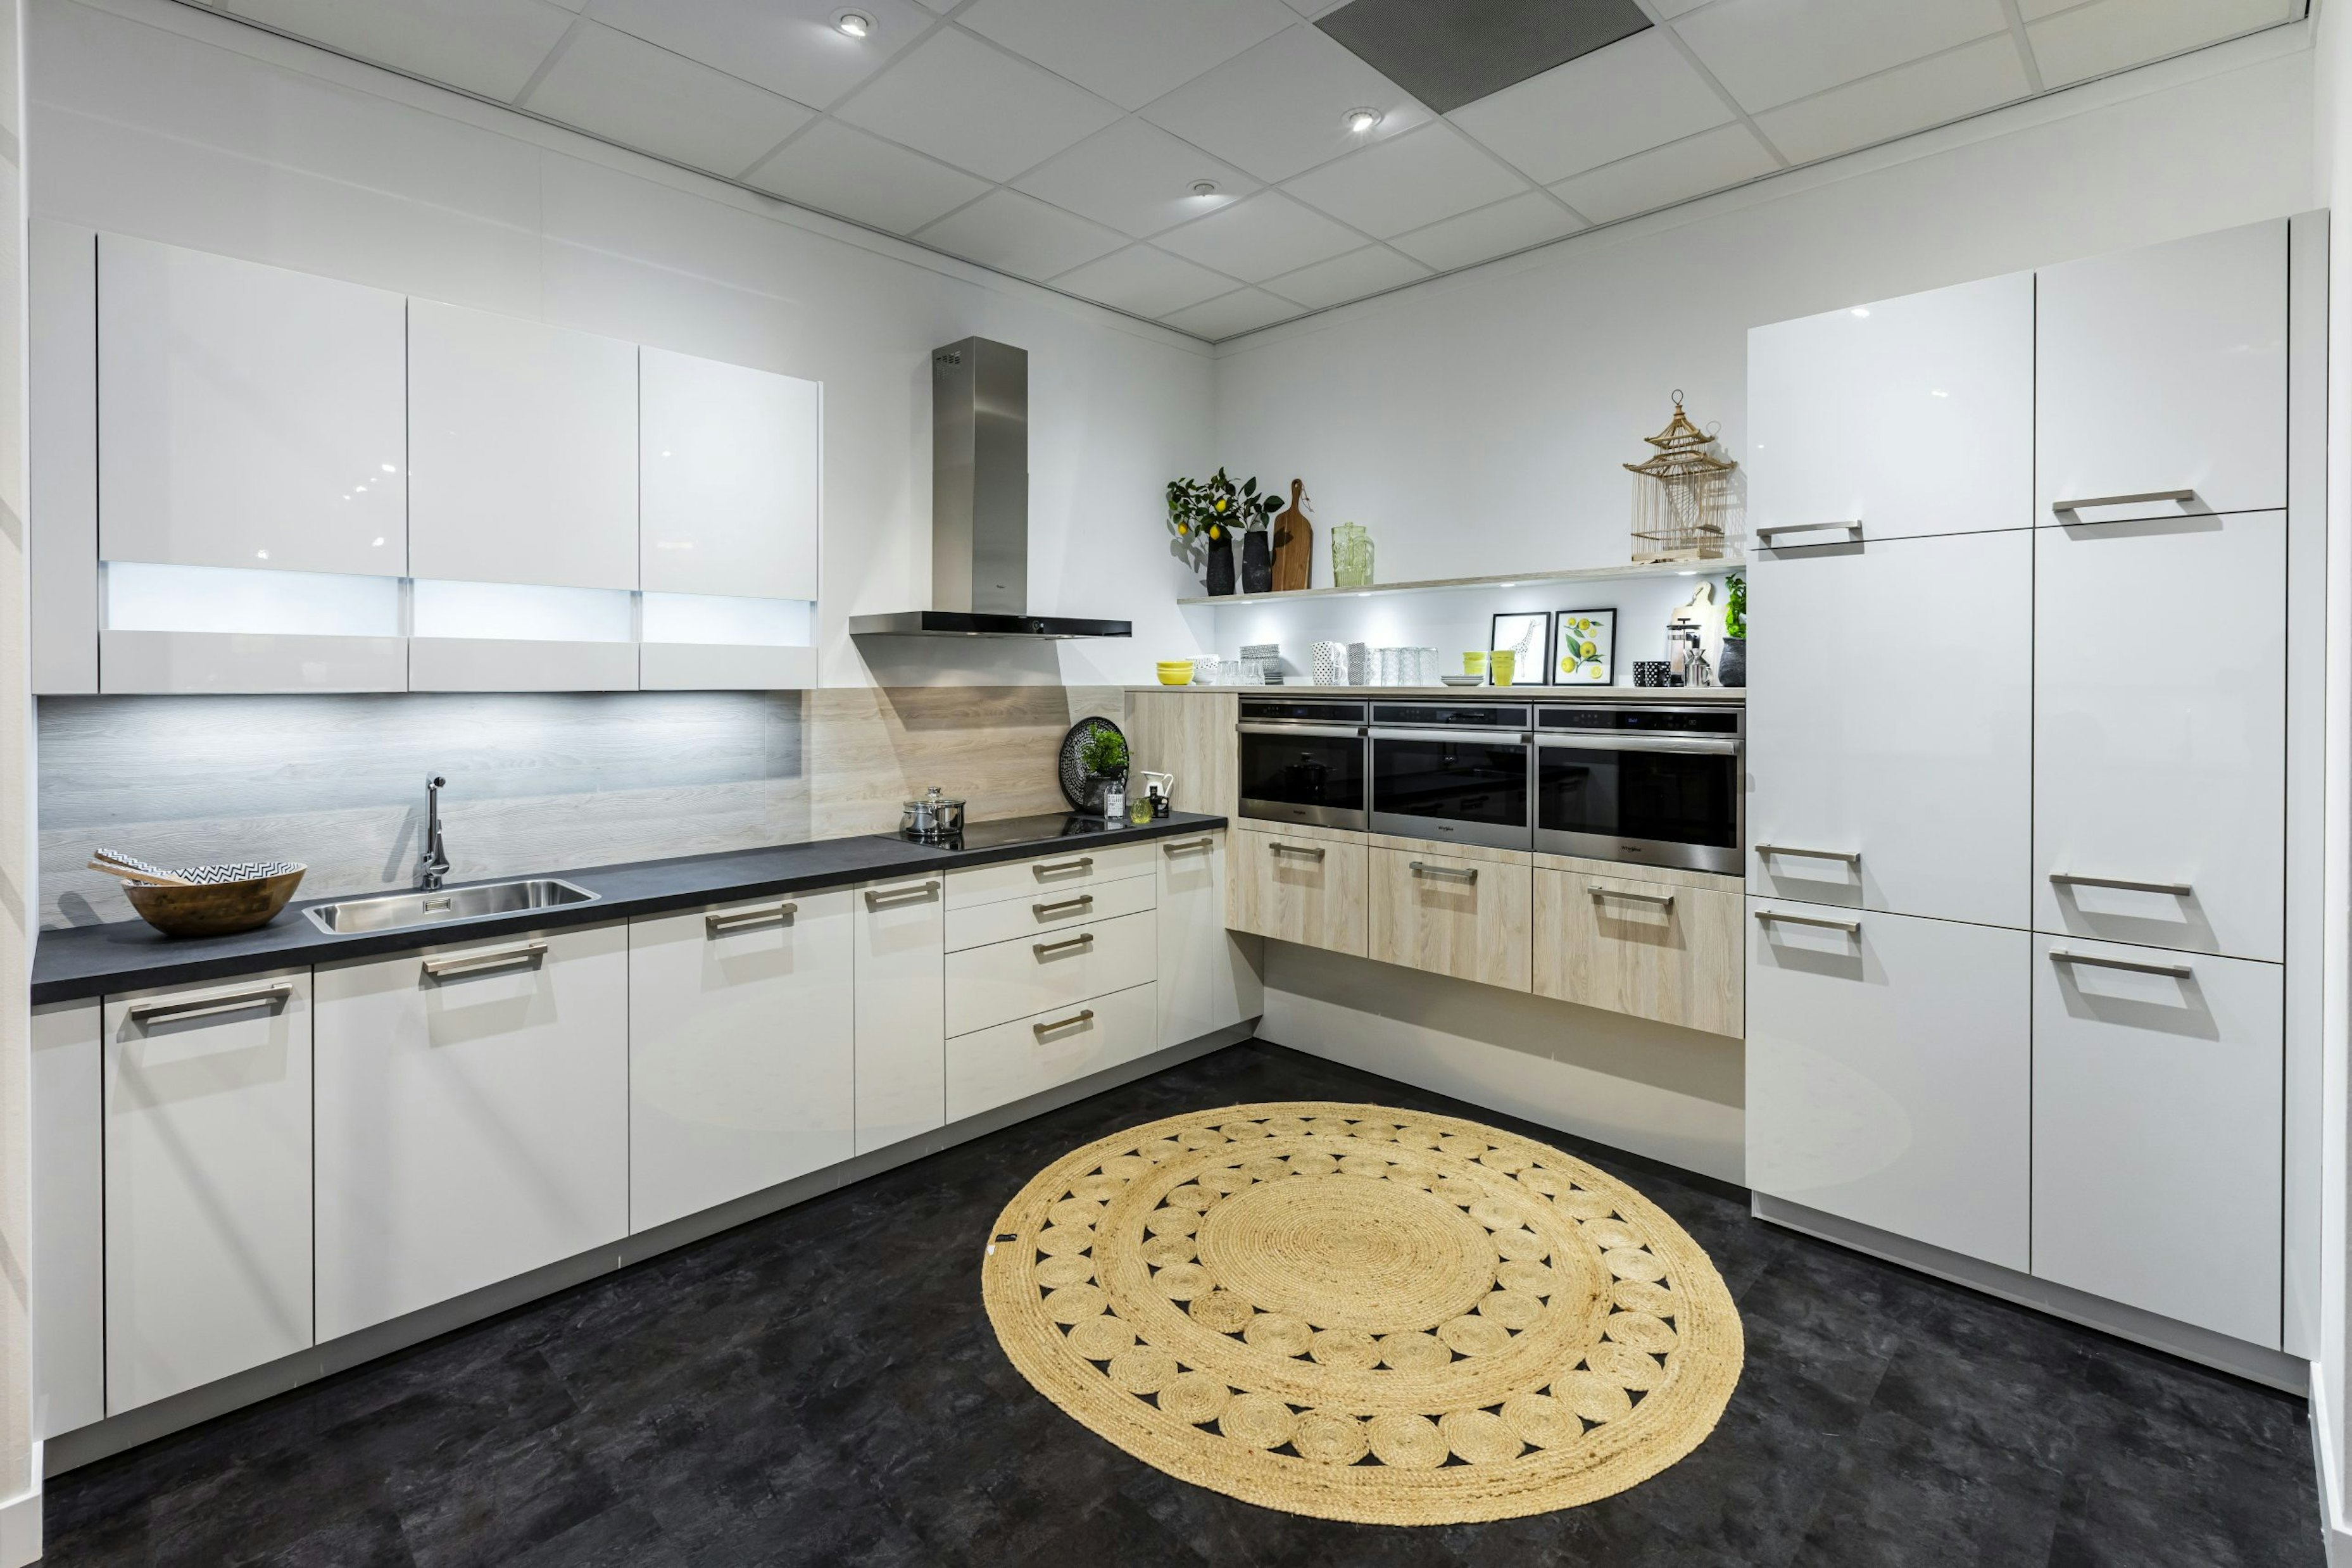 Keuken 1400224 - Witte hoekkeuken met zwevende houten keukenkasten voor inbouwapparaten